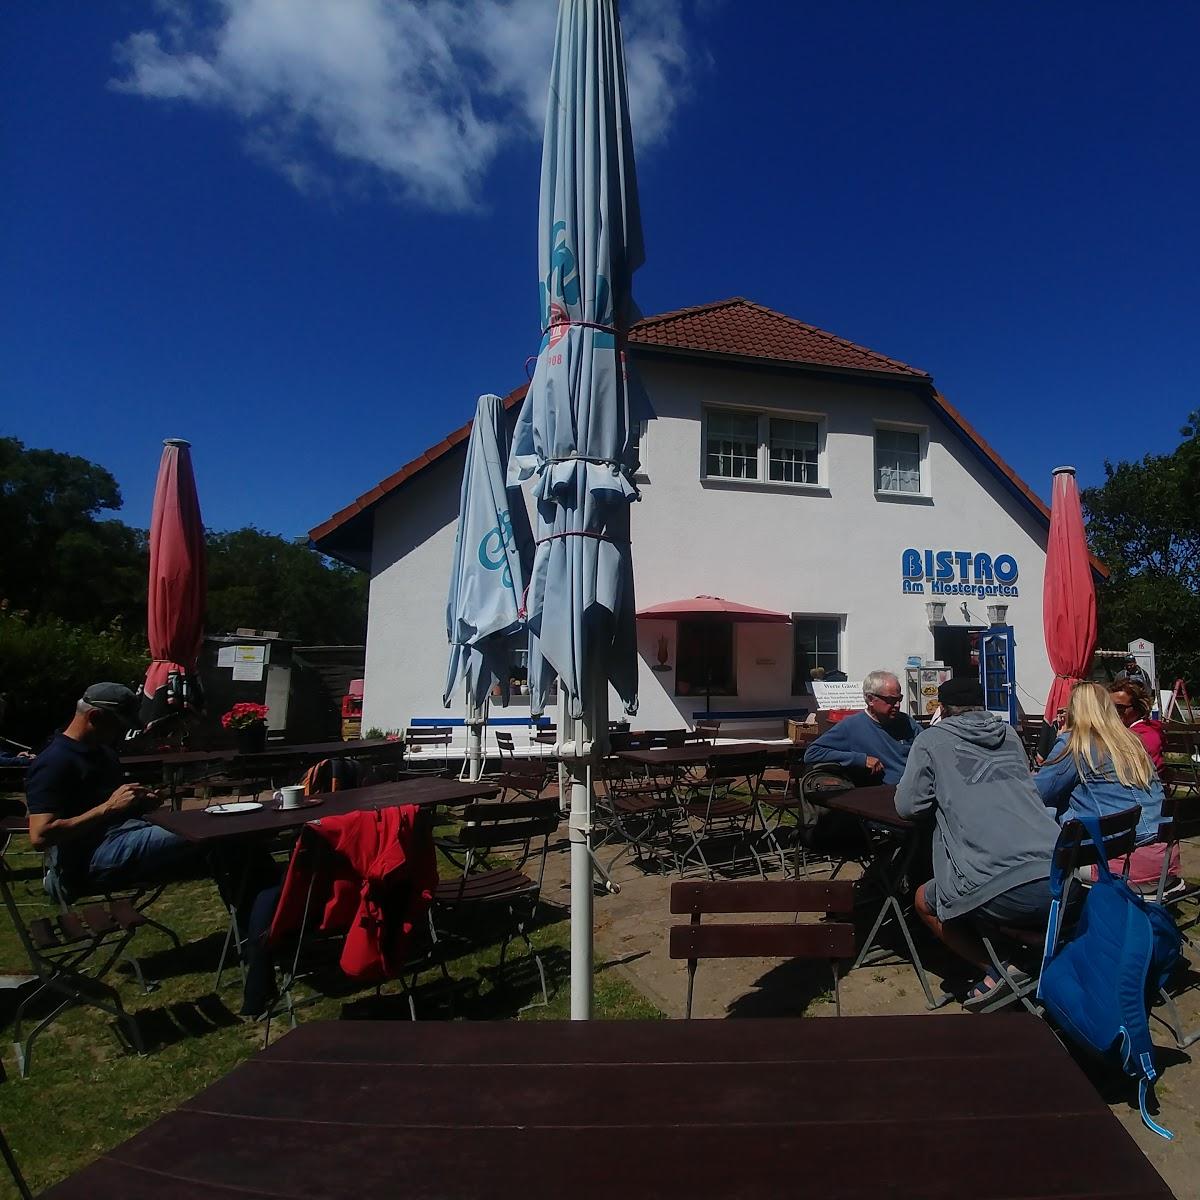 Restaurant "Bistro am Klostergarten" in Insel Hiddensee